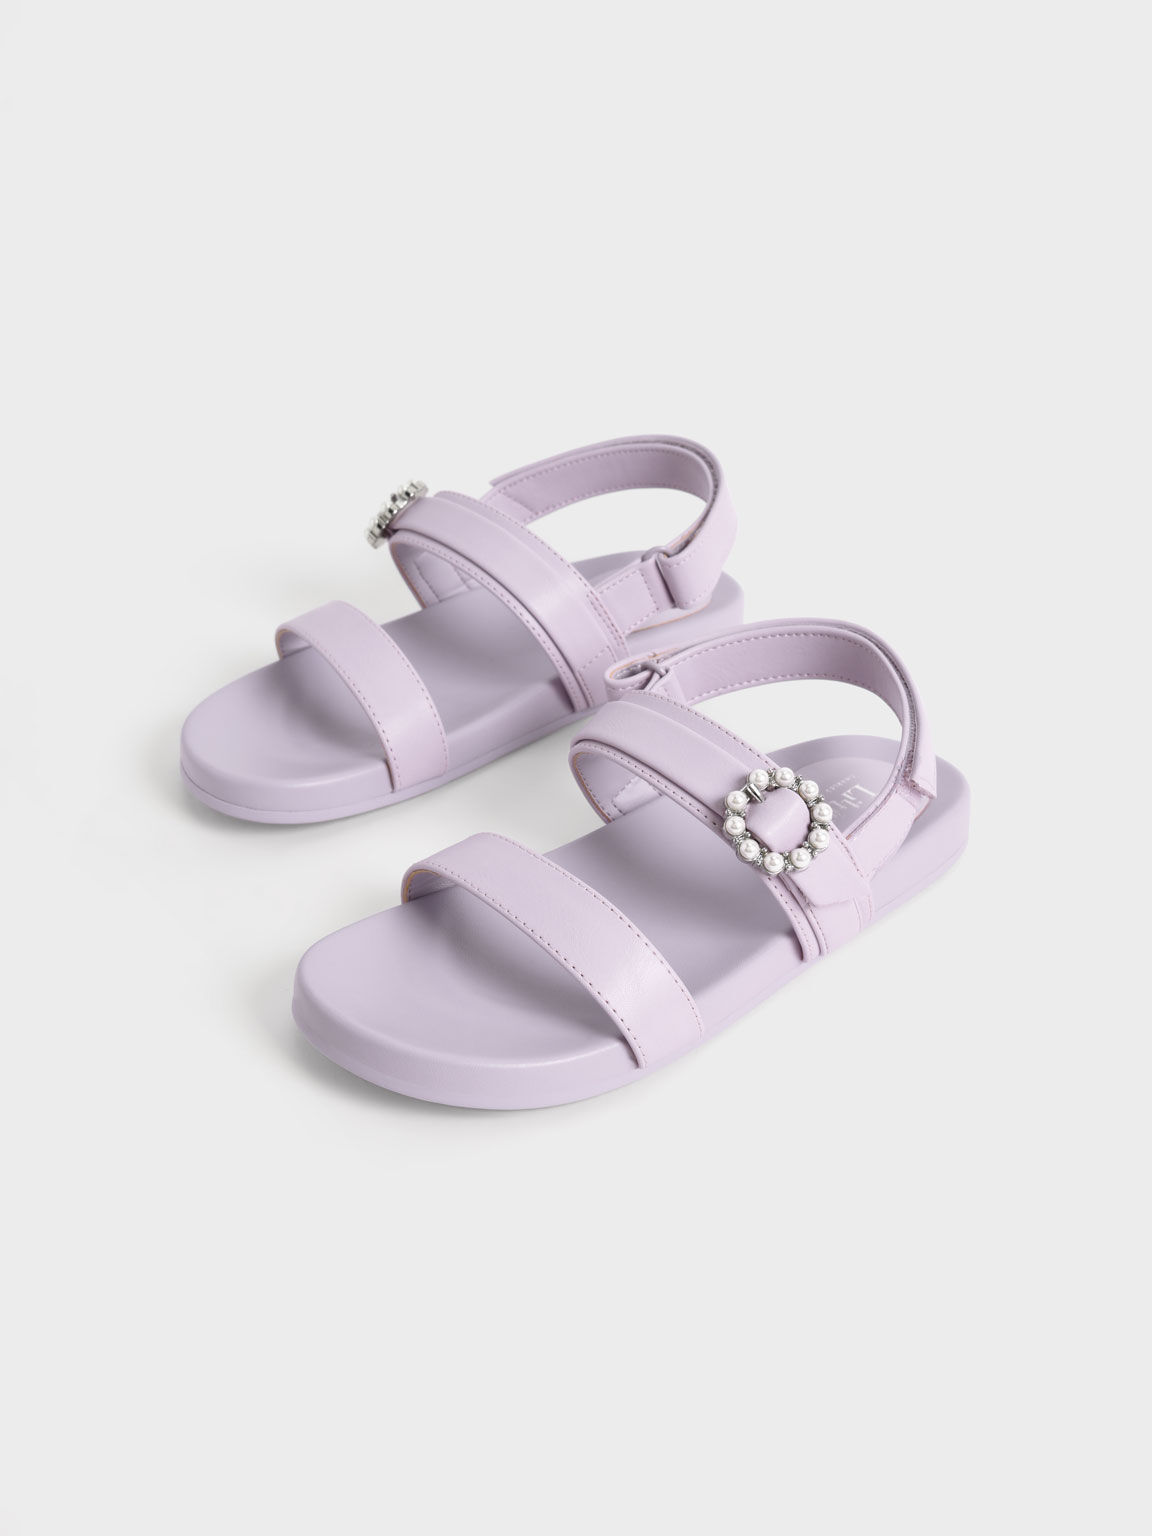 Sandal Girls' Bead-Embellished Back-Strap, Lilac, hi-res